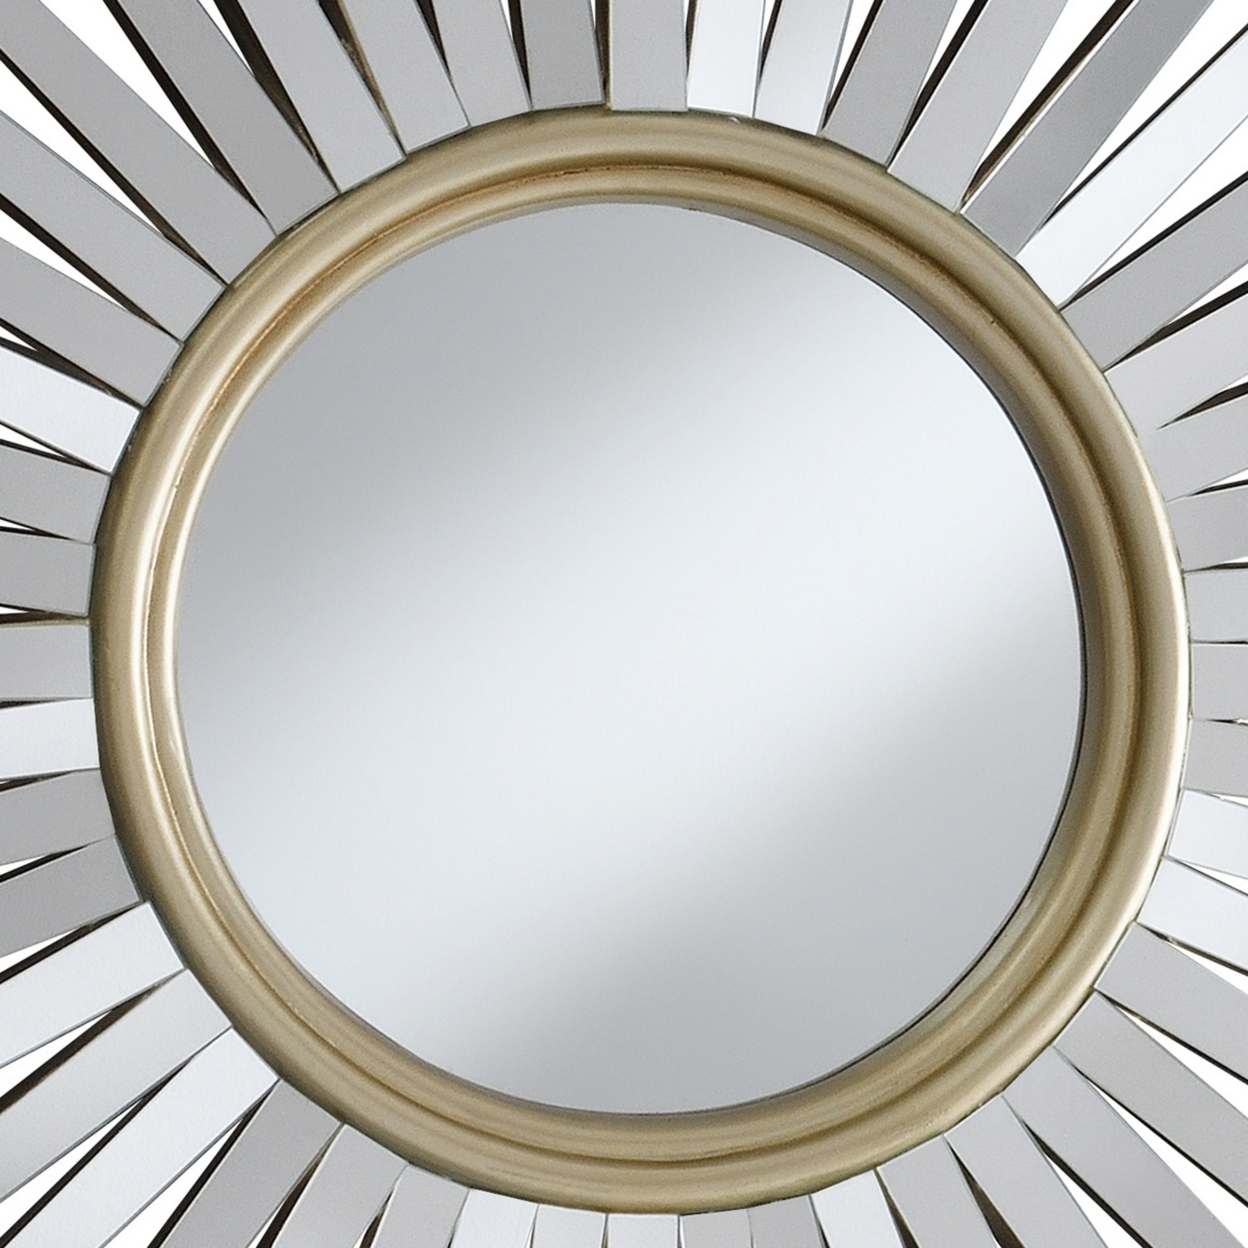 Round Wall Mirror With Sunburst Design, Silver- Saltoro Sherpi